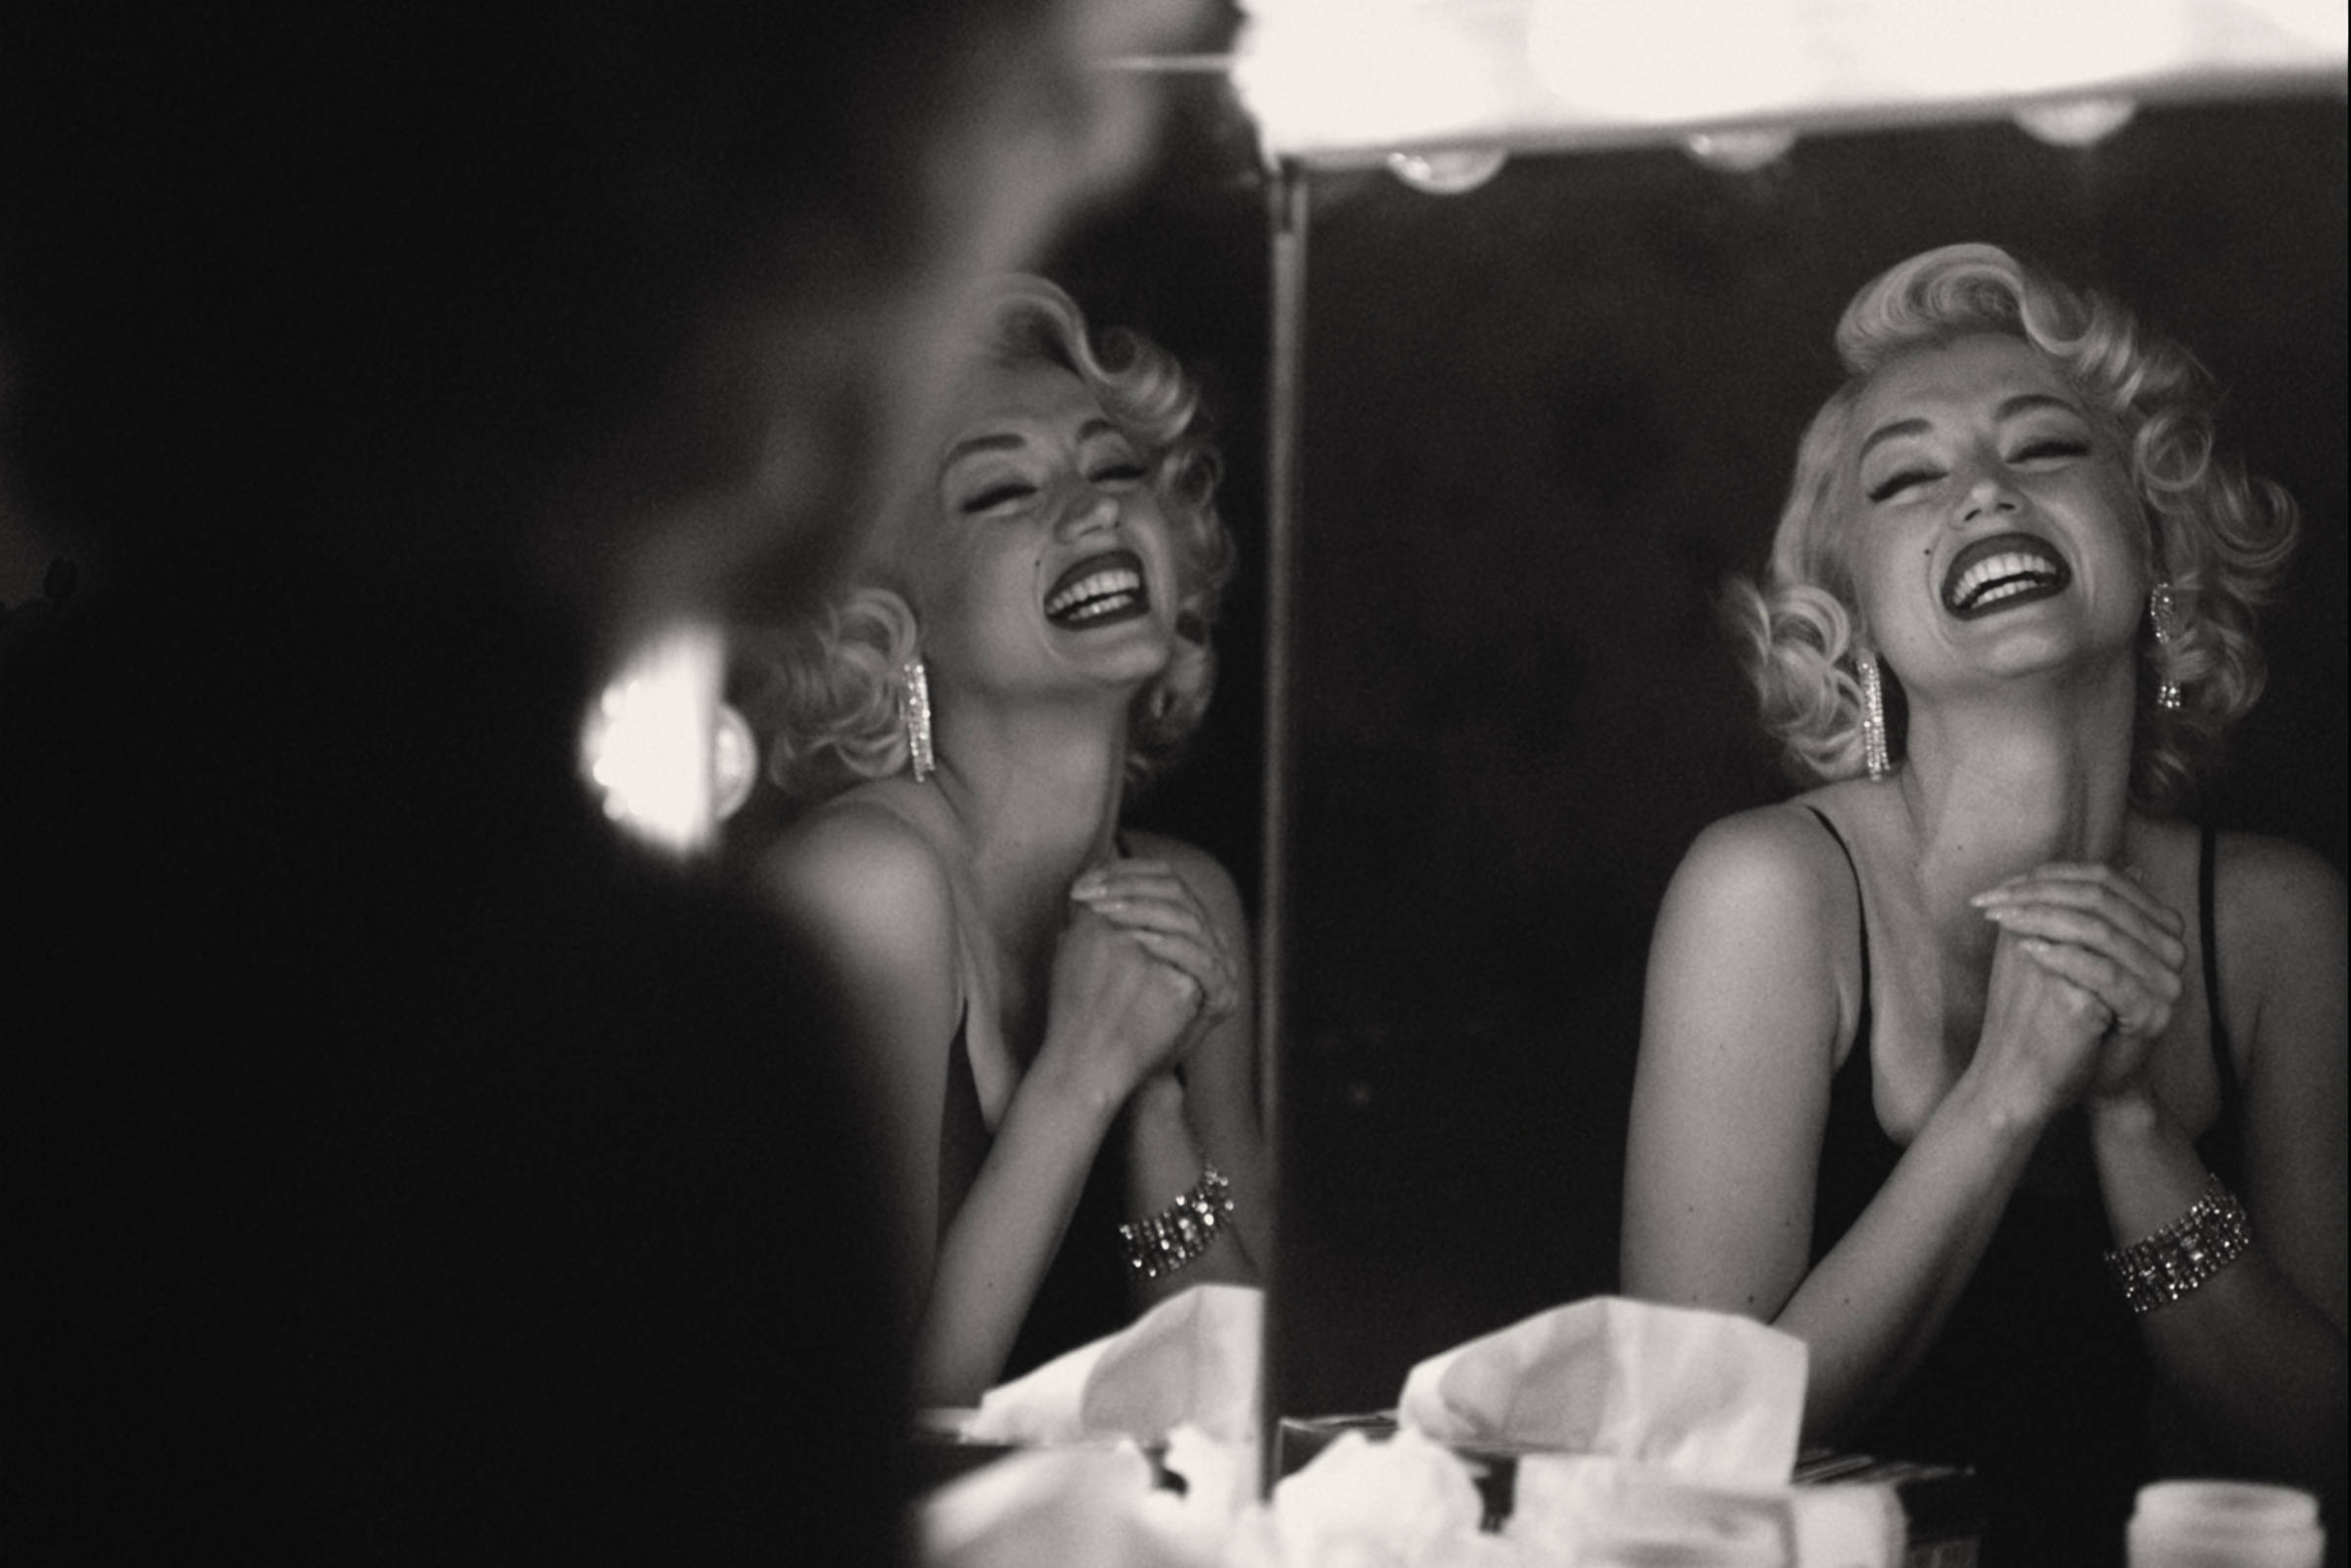 Caras  Marilyn Monroe submeteu-se a um aborto pouco antes de morrer